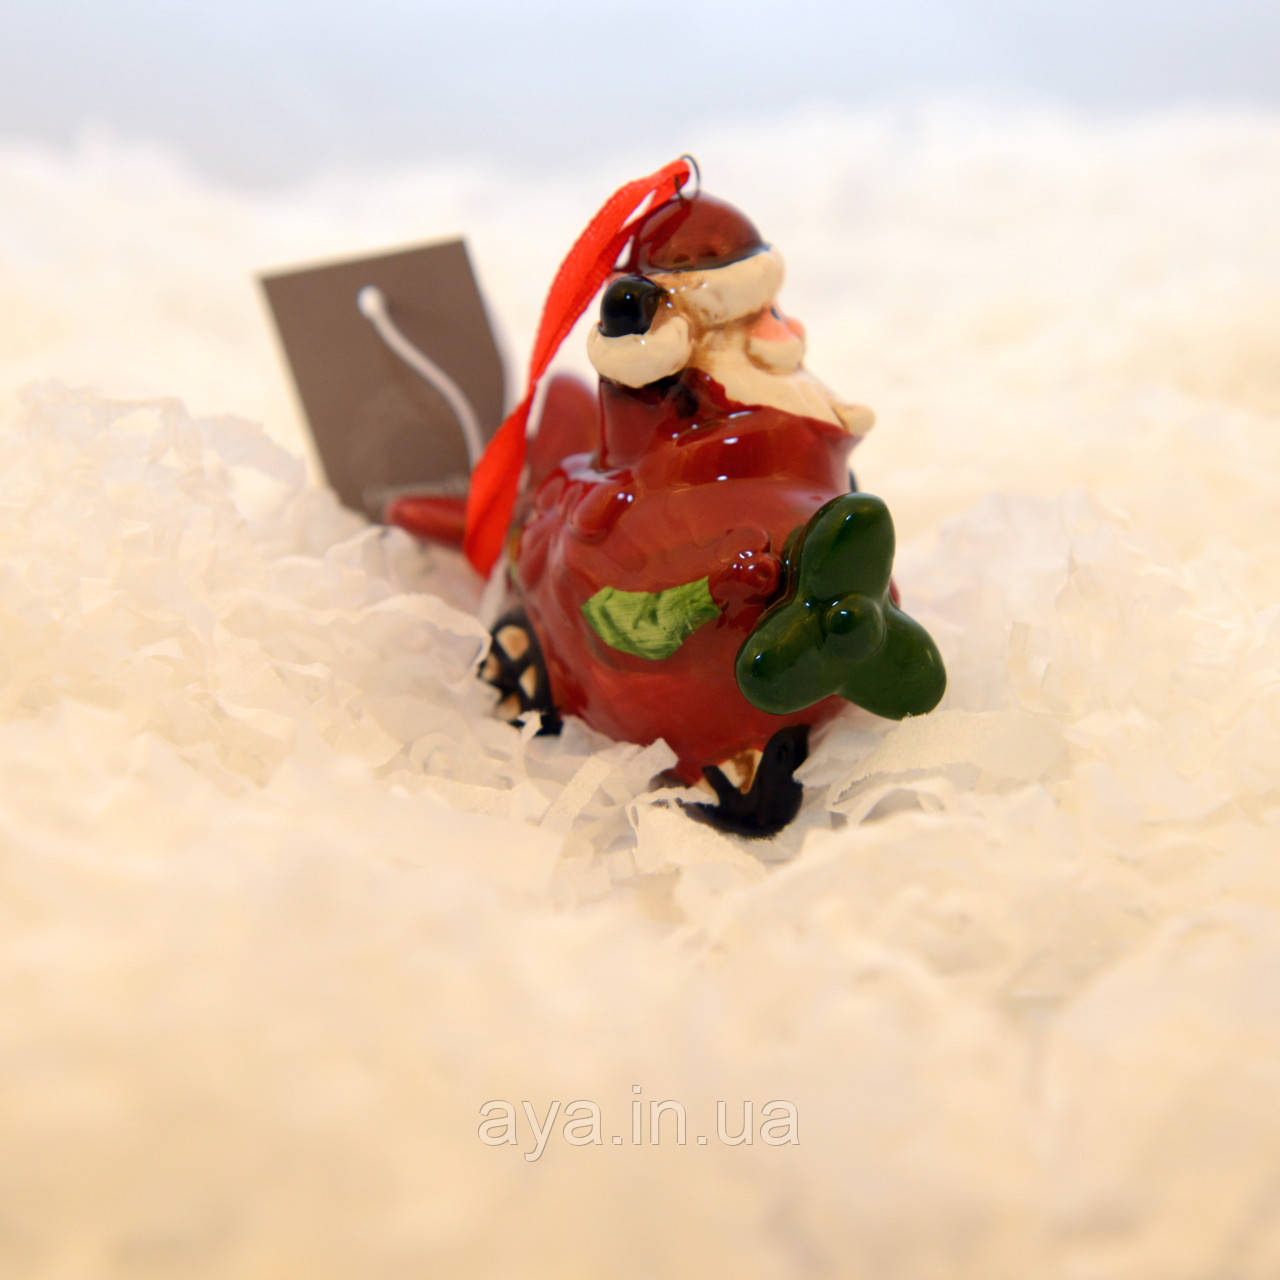 LV 183224 новорічна іграшка «Дід Мороз на літаку»